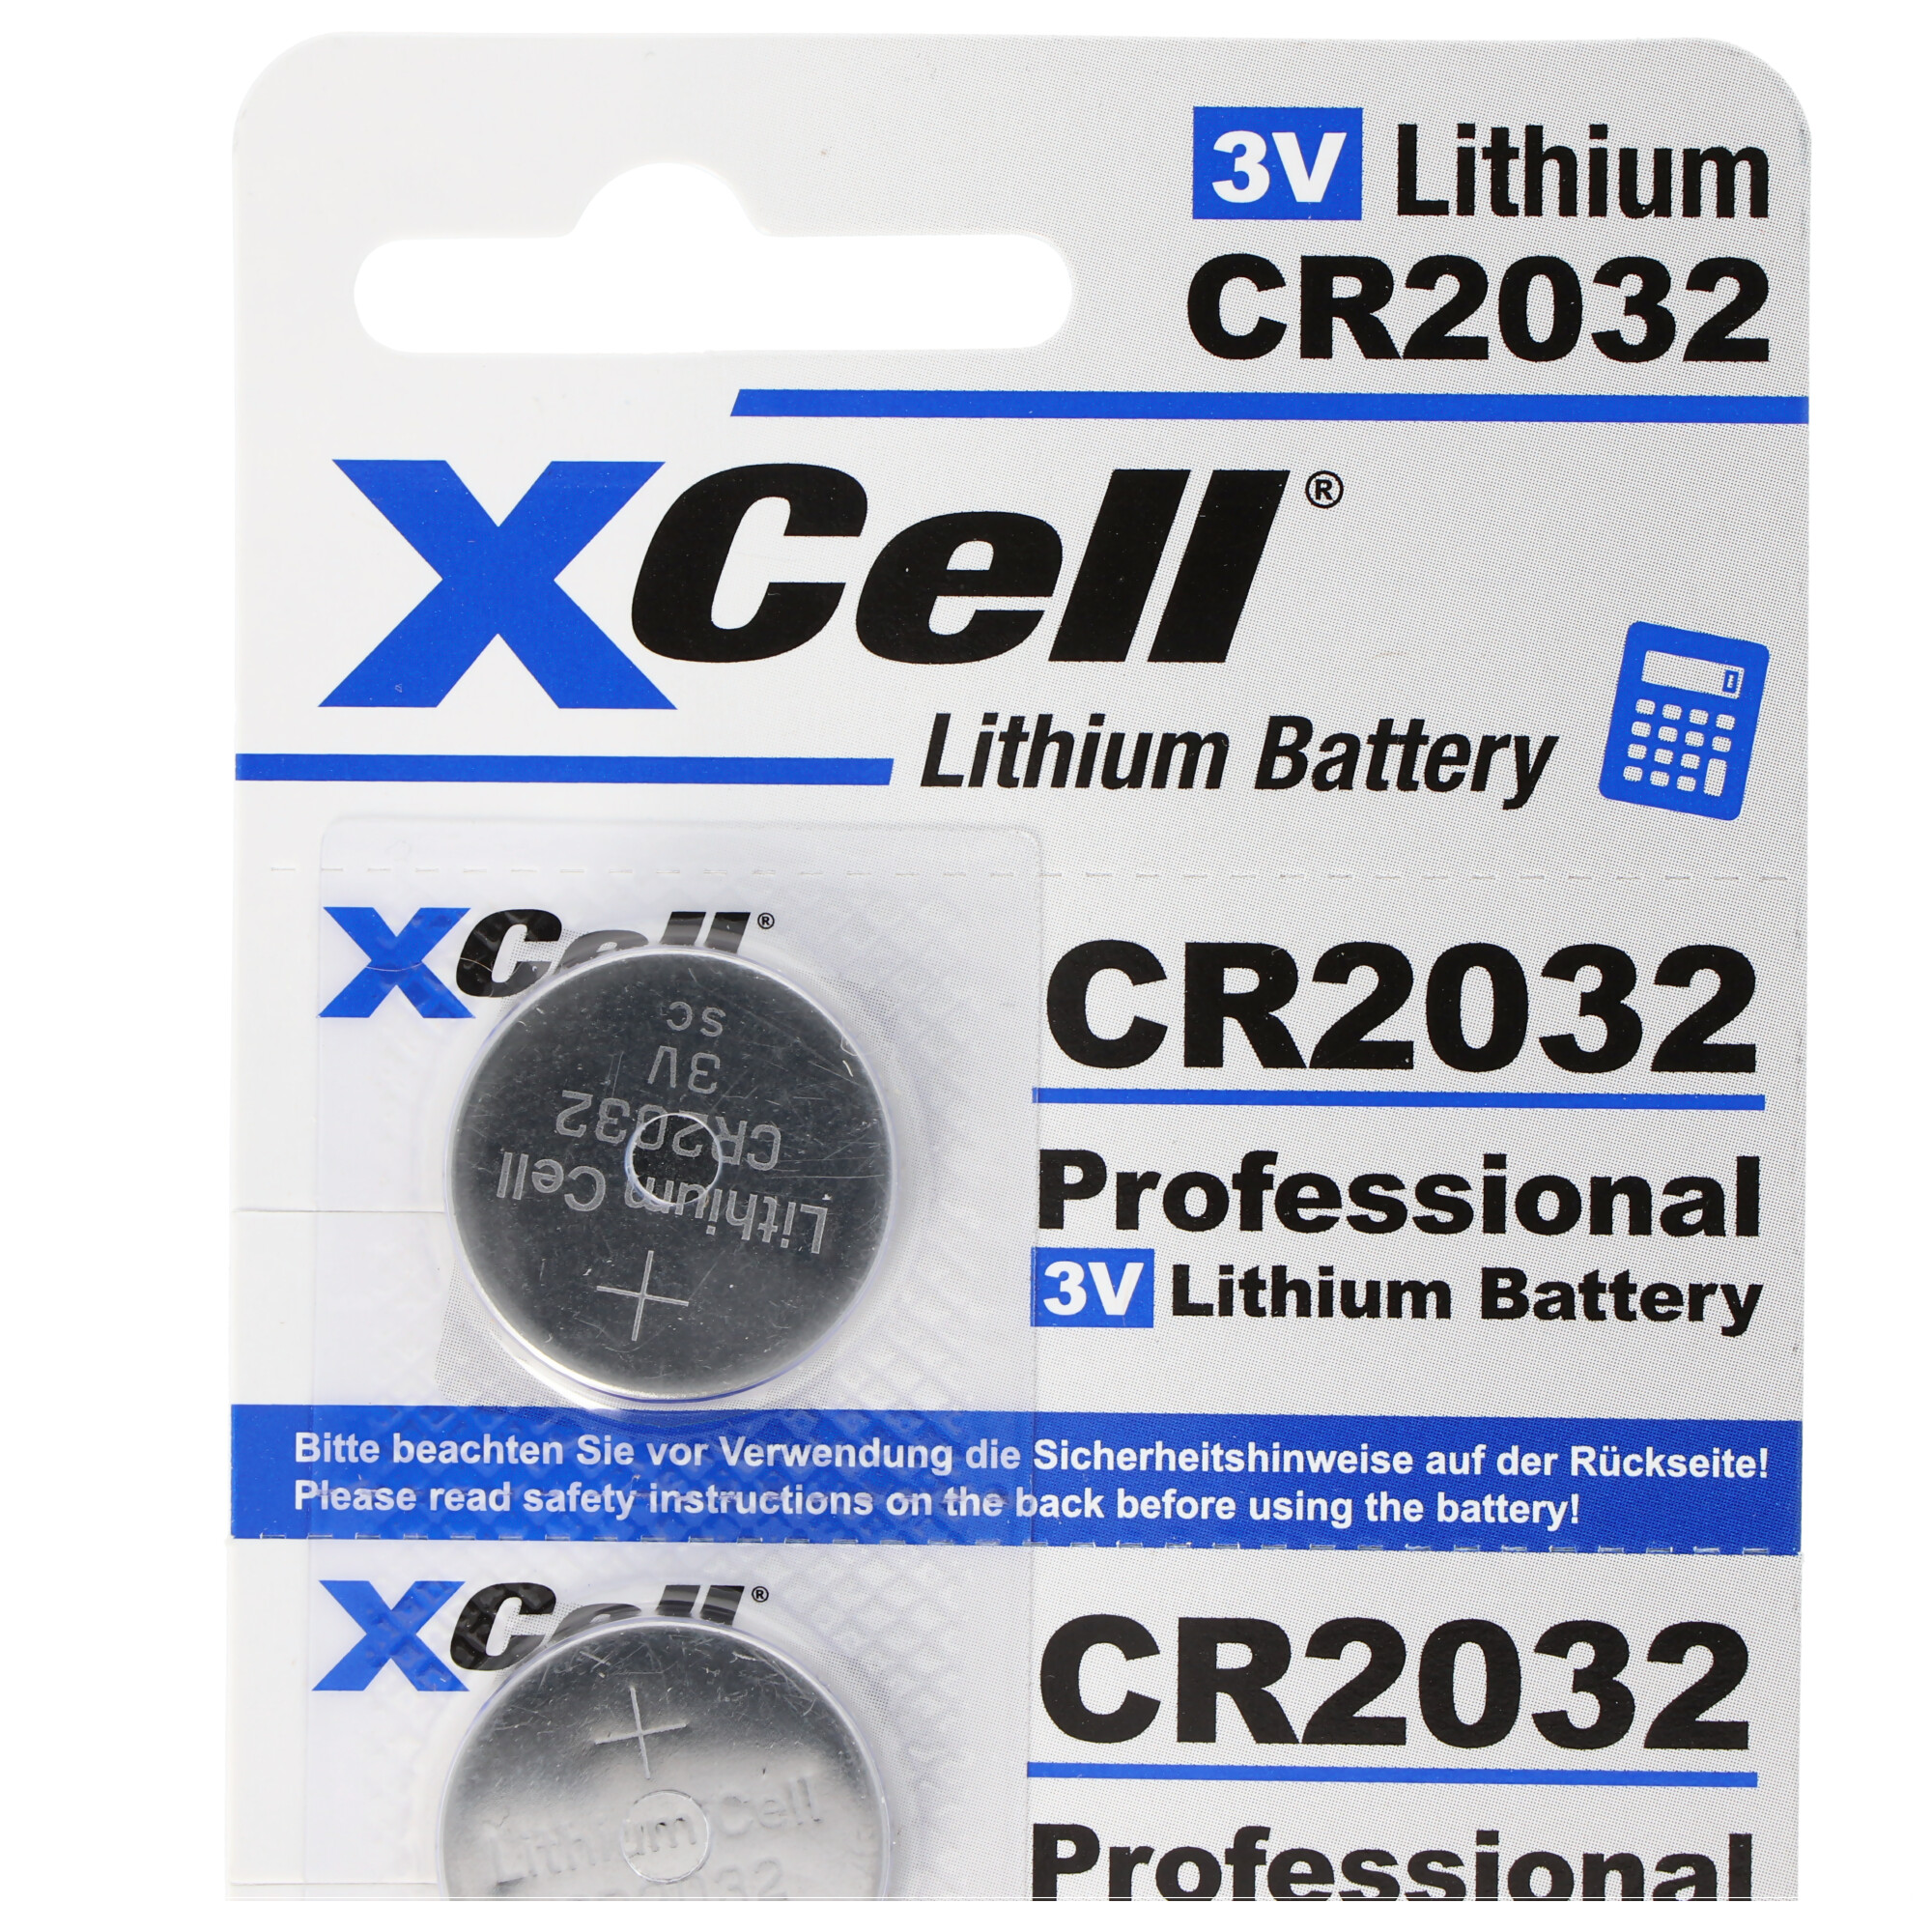 5er-Sparset CR2032 Lithium Batterie 3V, CR2032 Batterien im praktischen 5er Set